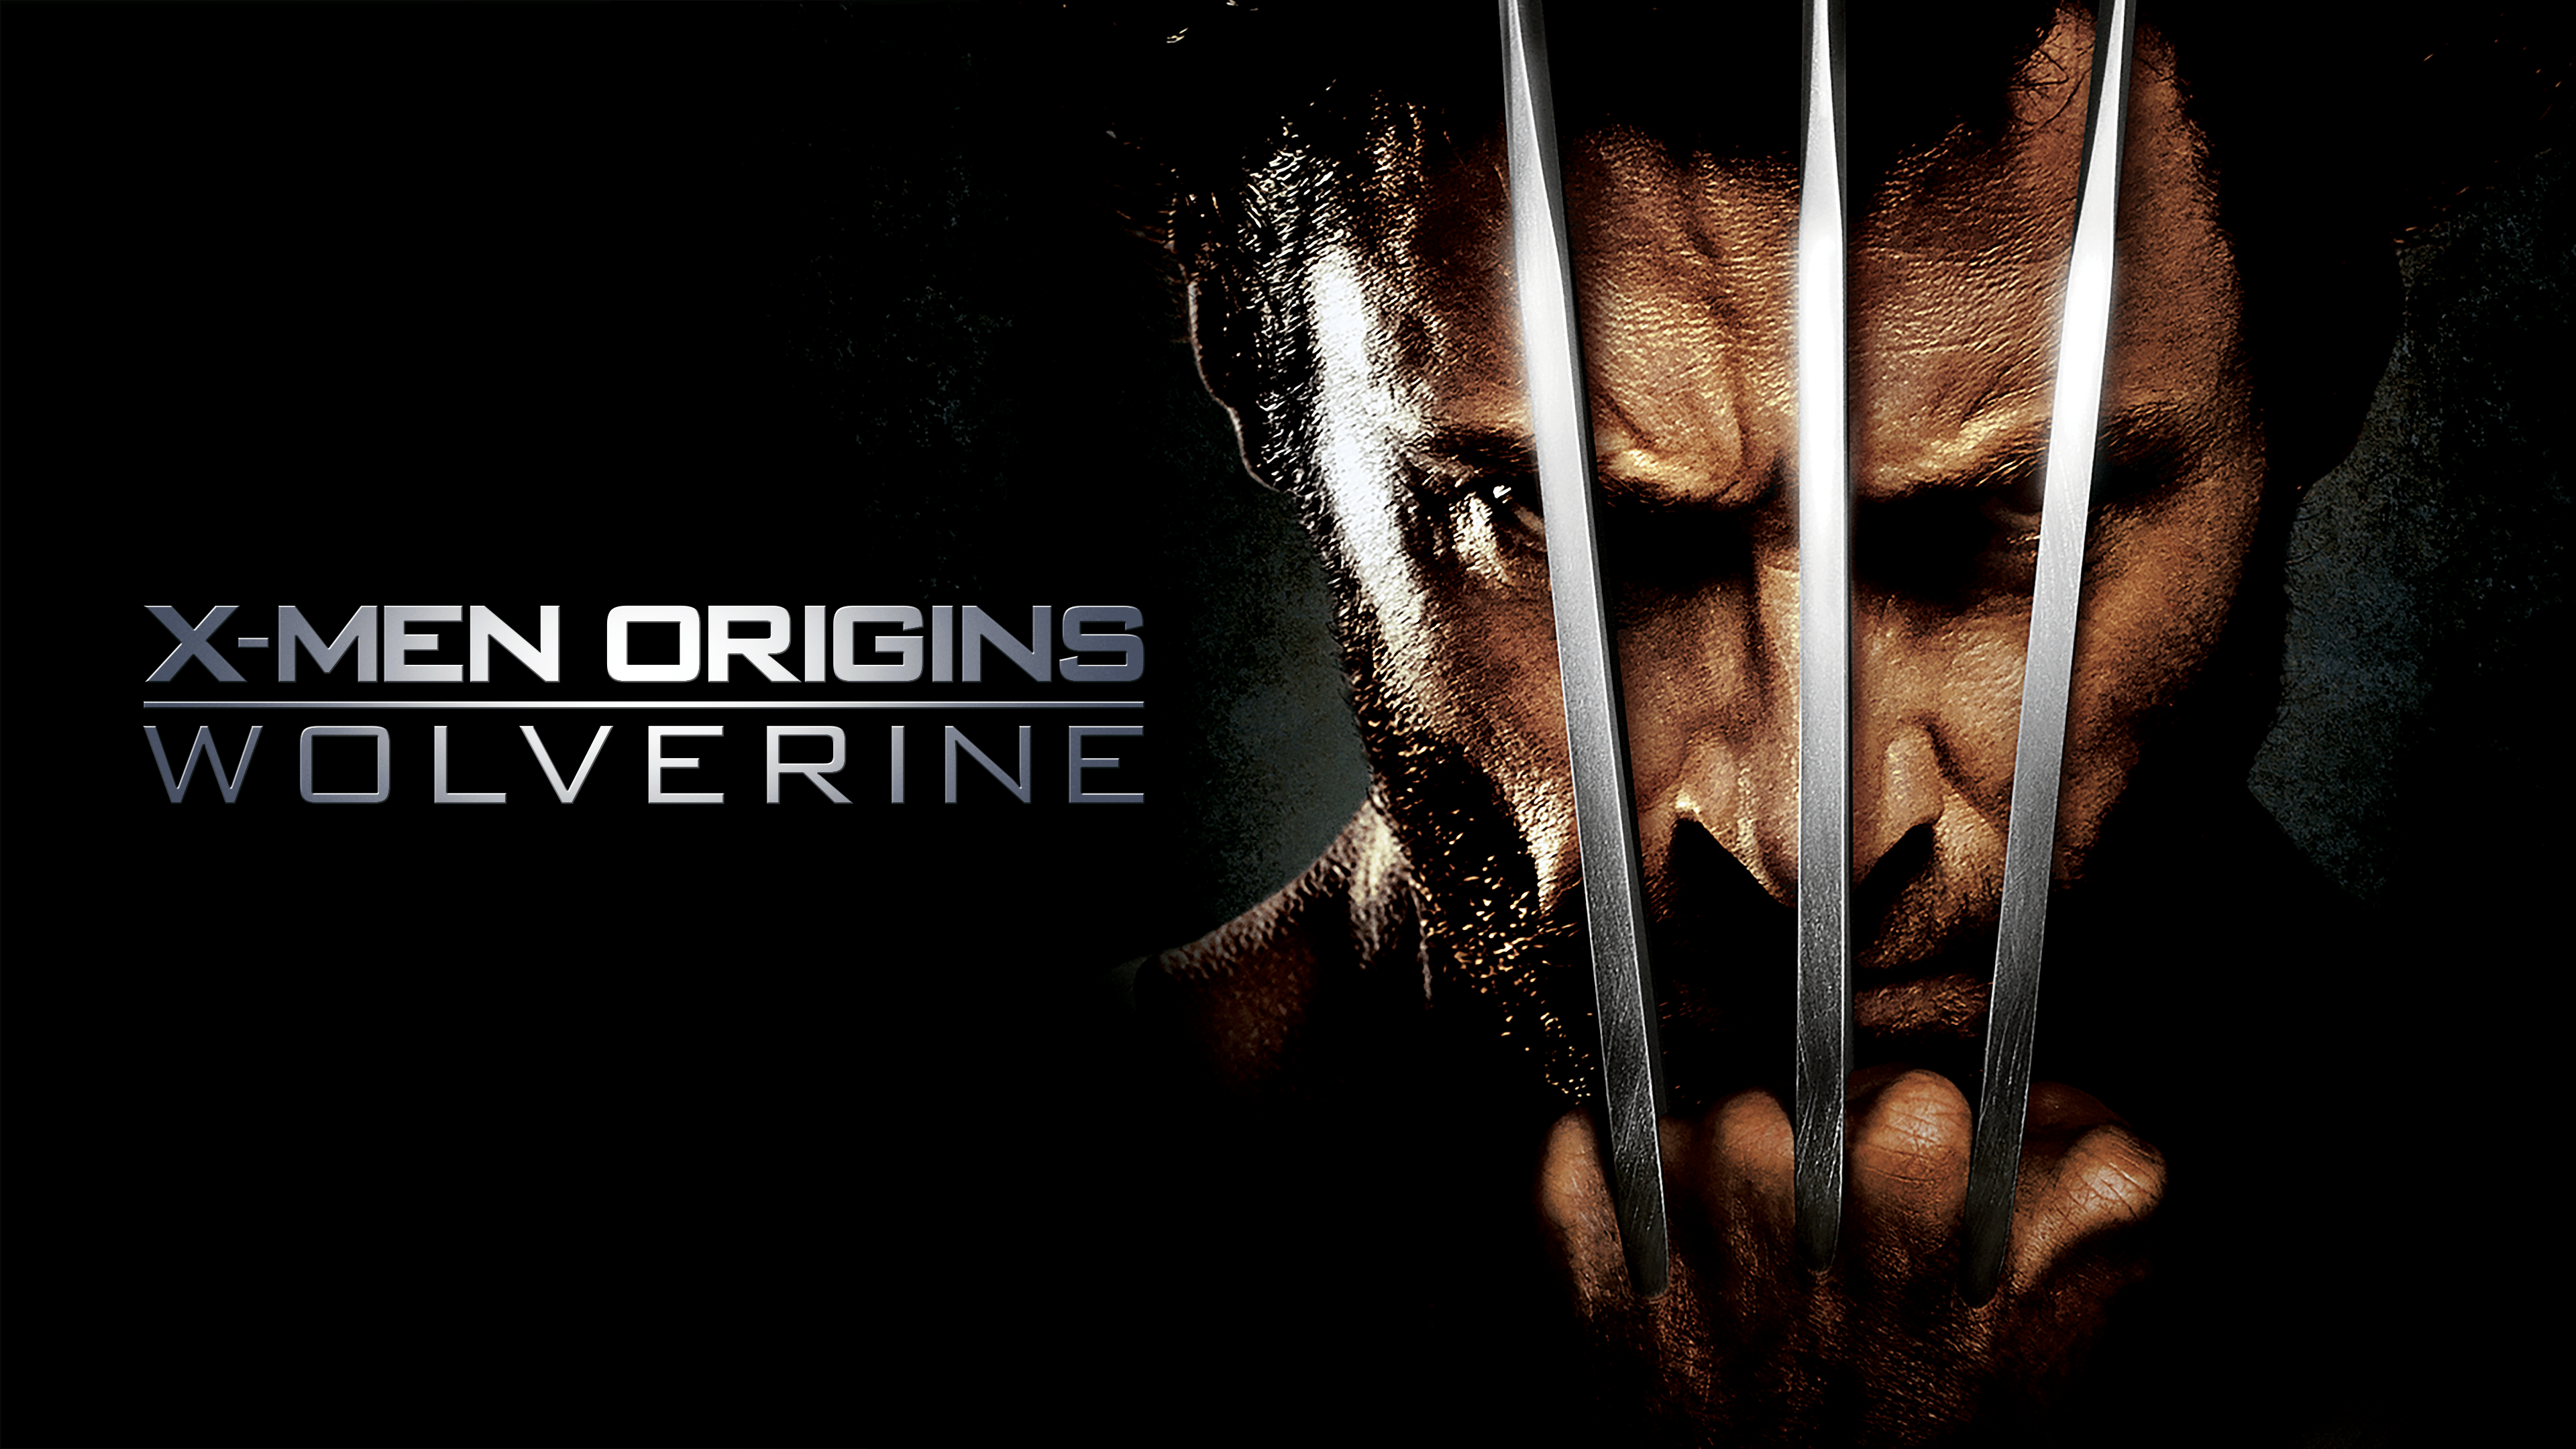 Длс икс. Росомаха люди х. X-men Origins: Wolverine 2009. X-men Origins: Wolverine (2009) игра обложка. Росомаха x men игра.